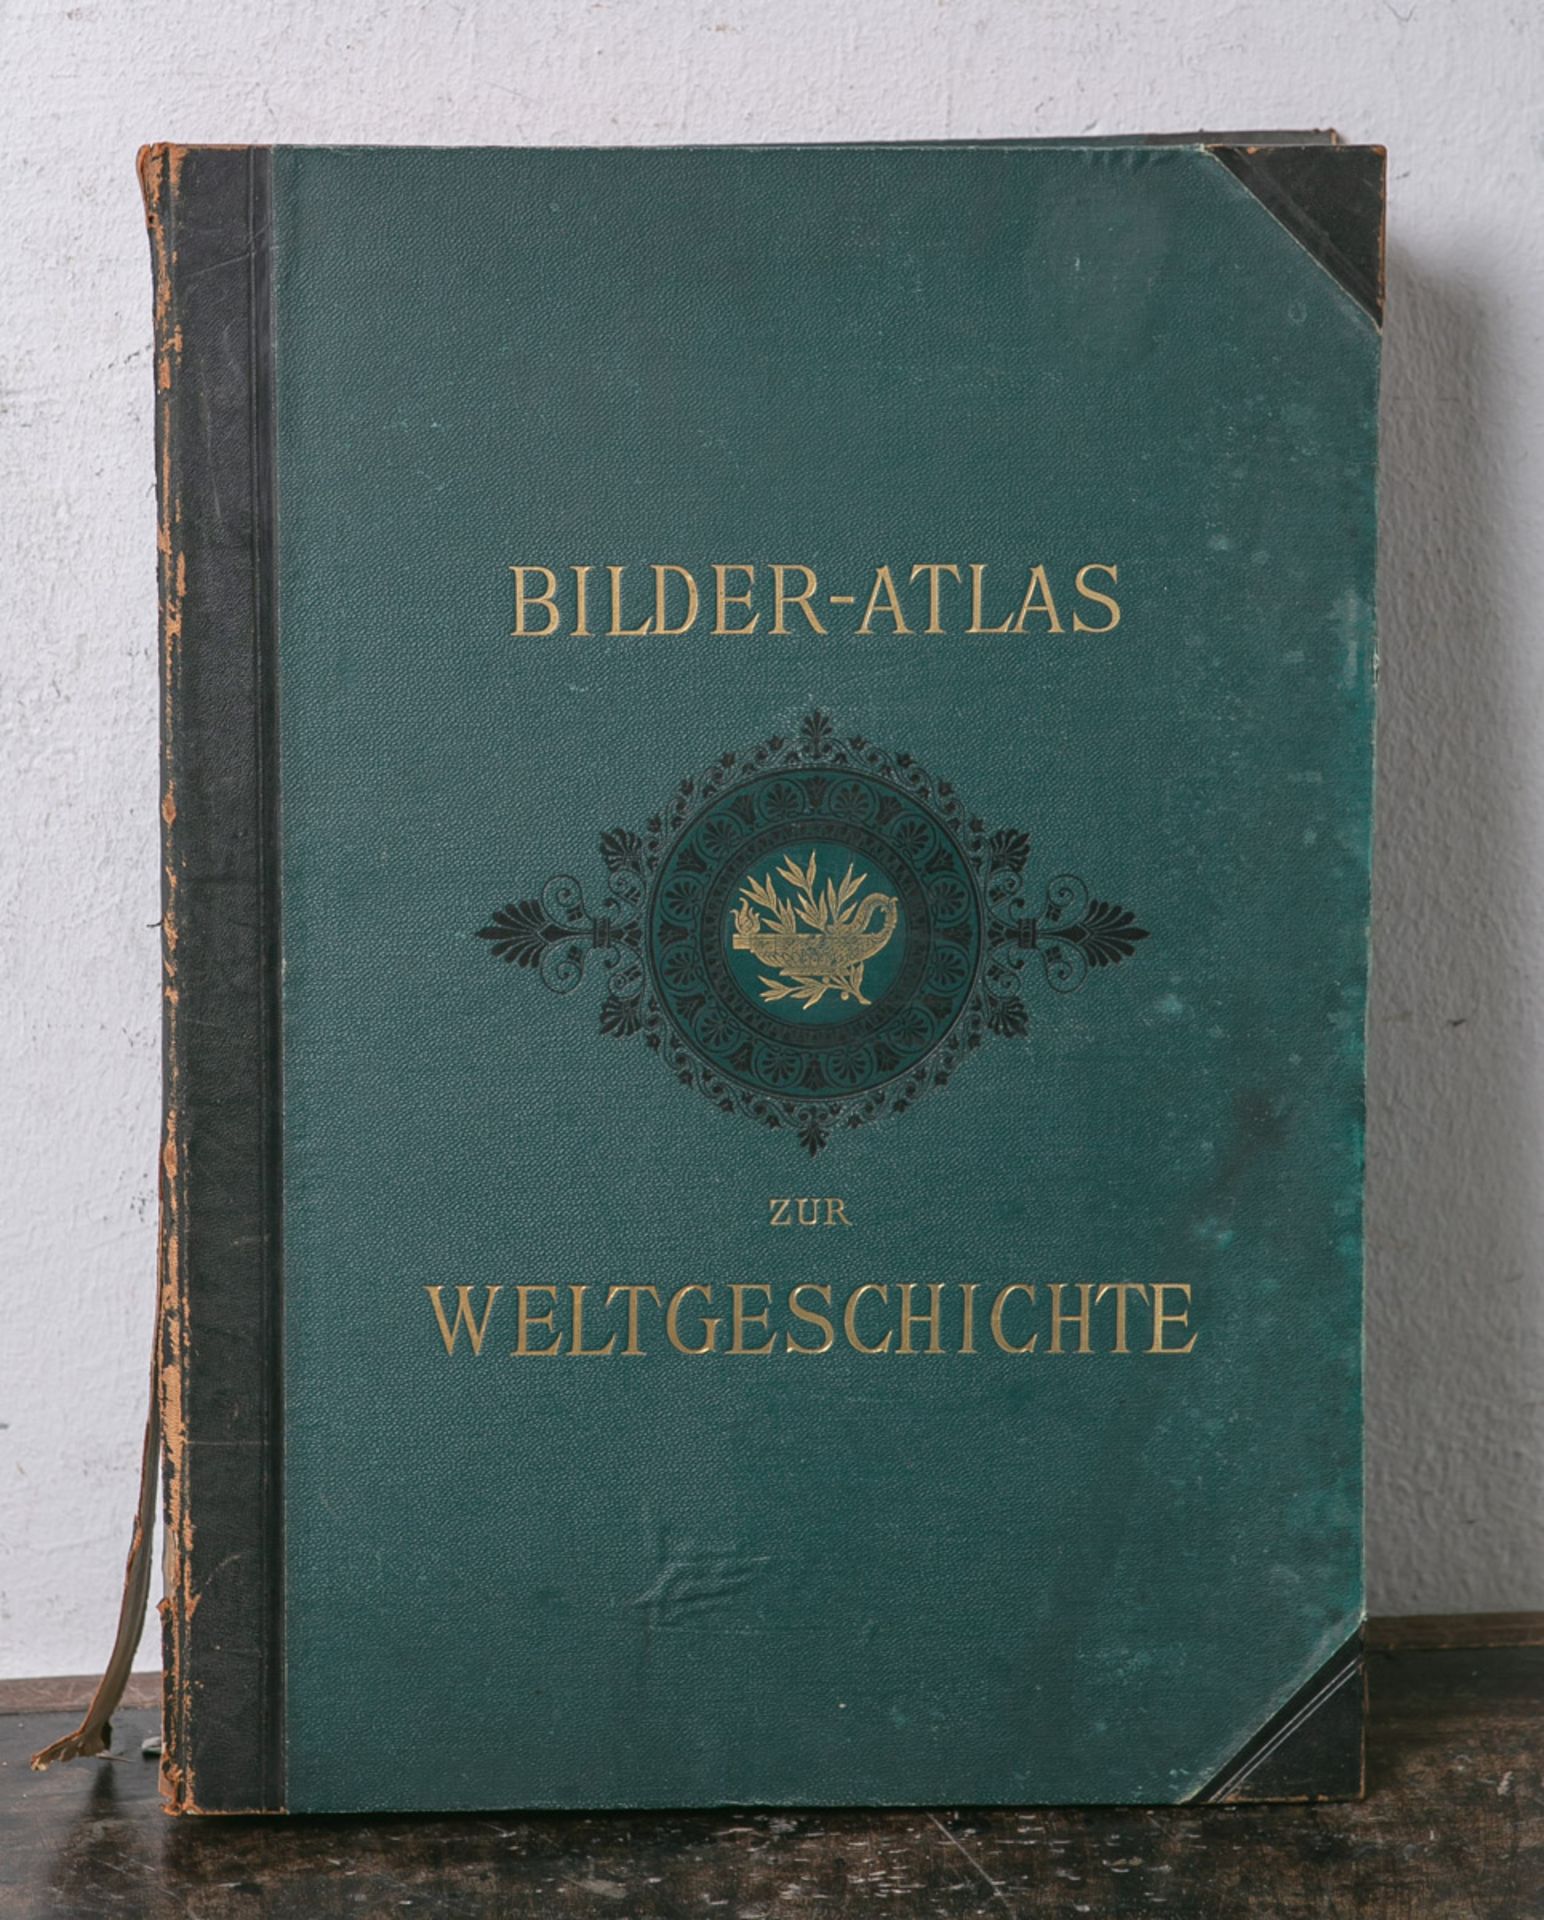 Weisser, Ludwig Prof. (Hrsg.), "Bilder-Atlas zur Weltgeschichte nach Kunstwerken alter und neuer Zei